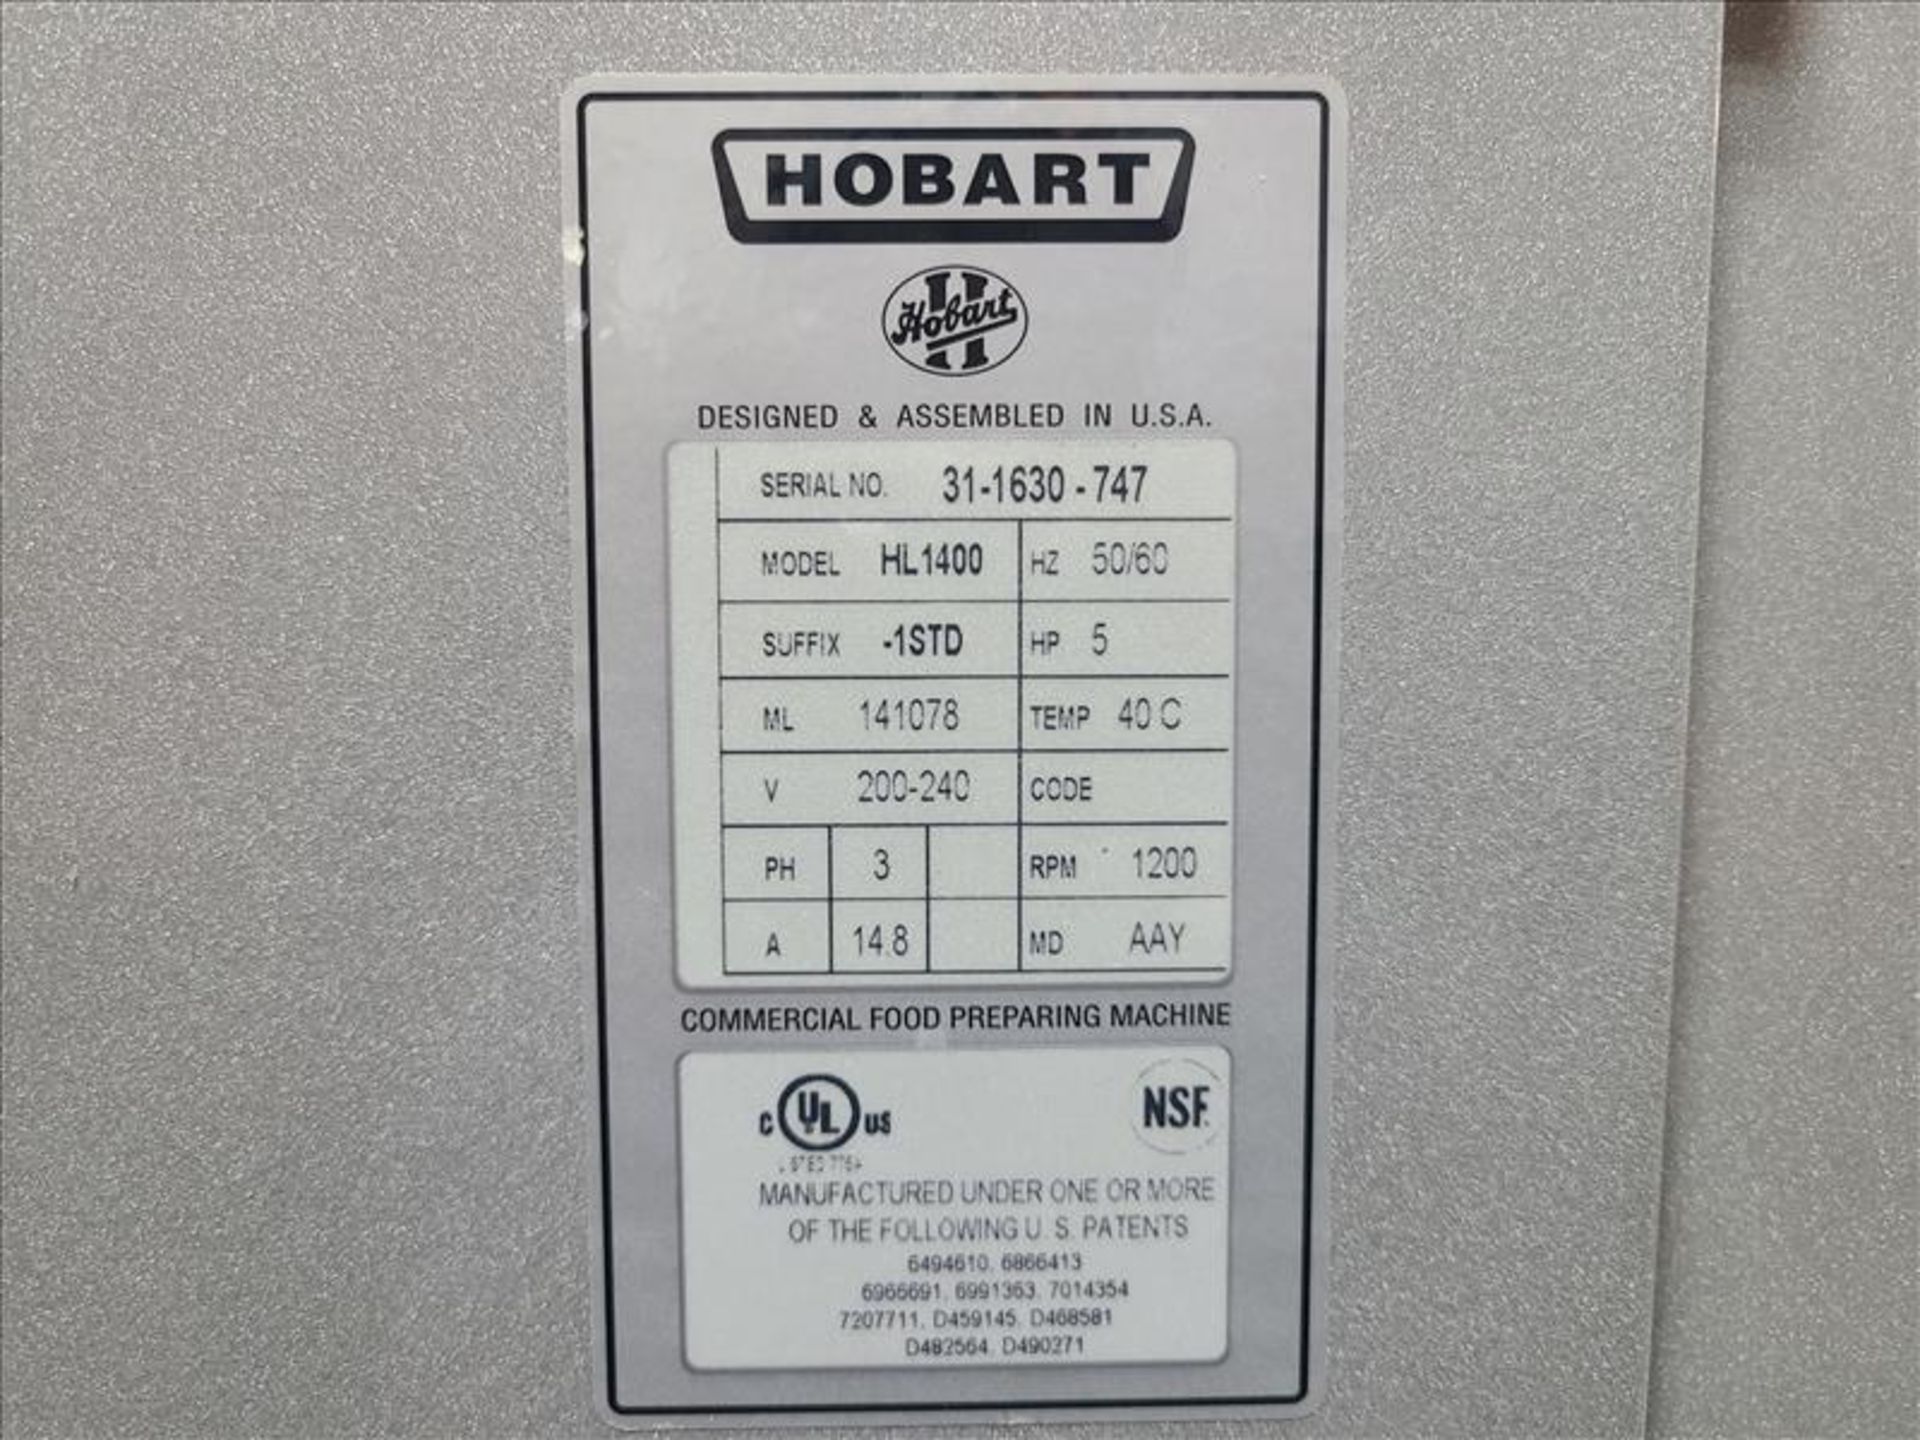 Hobart Legacy Planetary Floor Mixer, mod. HL-1400, ser. no. 31-1630-747, 140 Qt., 1200 RPM, 5 hp, - Image 8 of 9